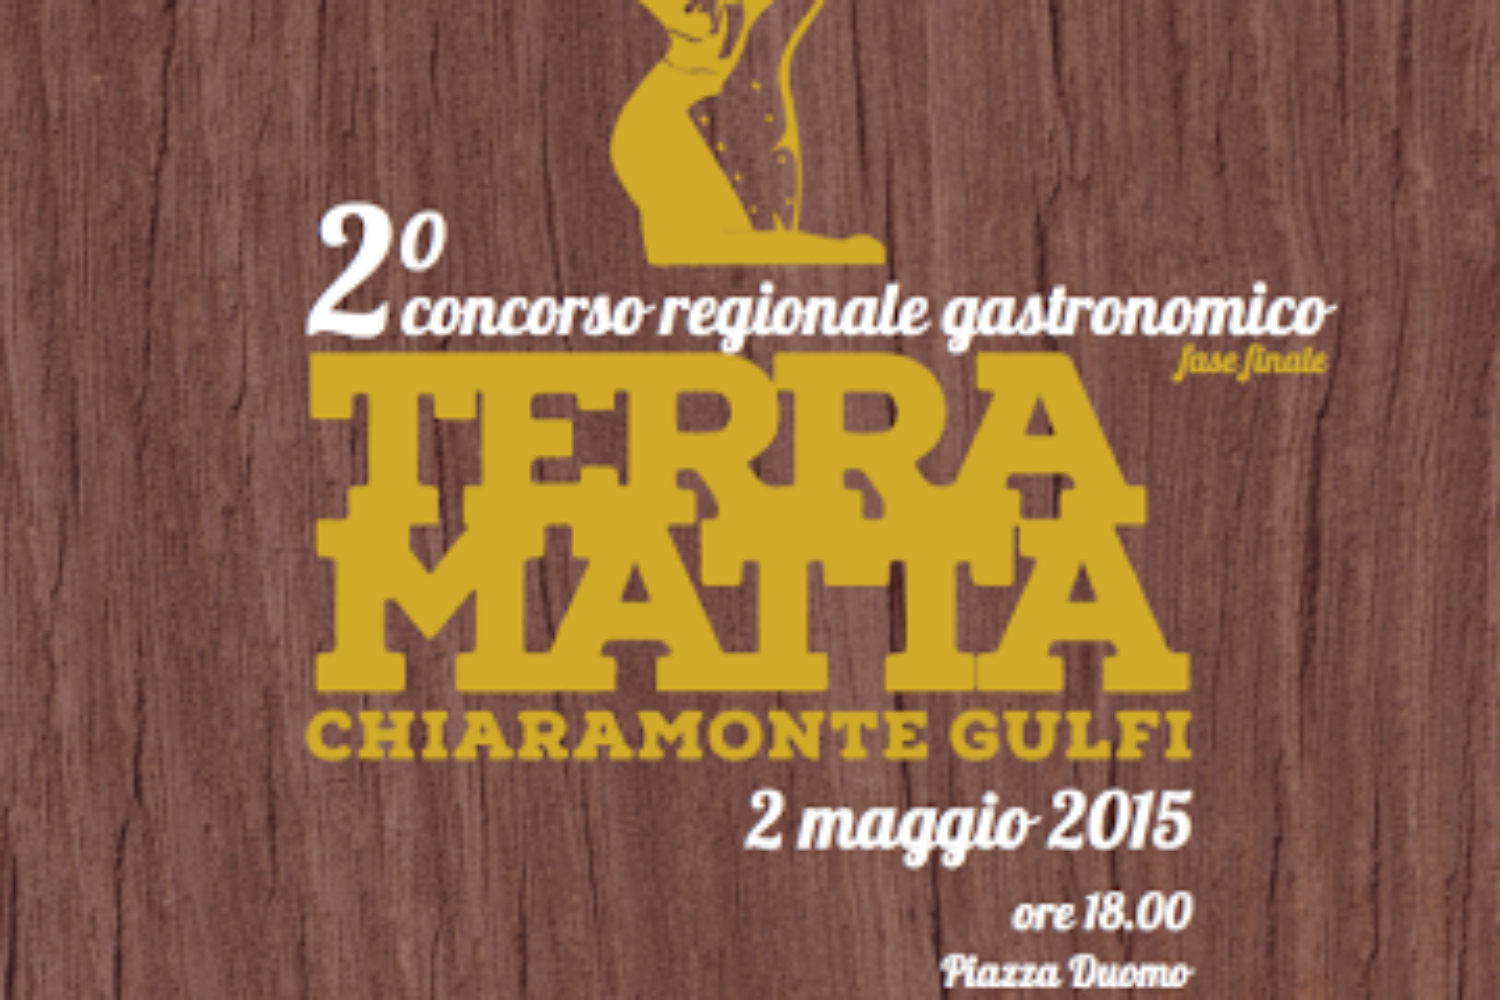 Sabato 2 maggio 2015 a Chiaramonte Gulfi la finale del Concorso regionale gastronomico Terra Matta – Aspettando Expo 2015